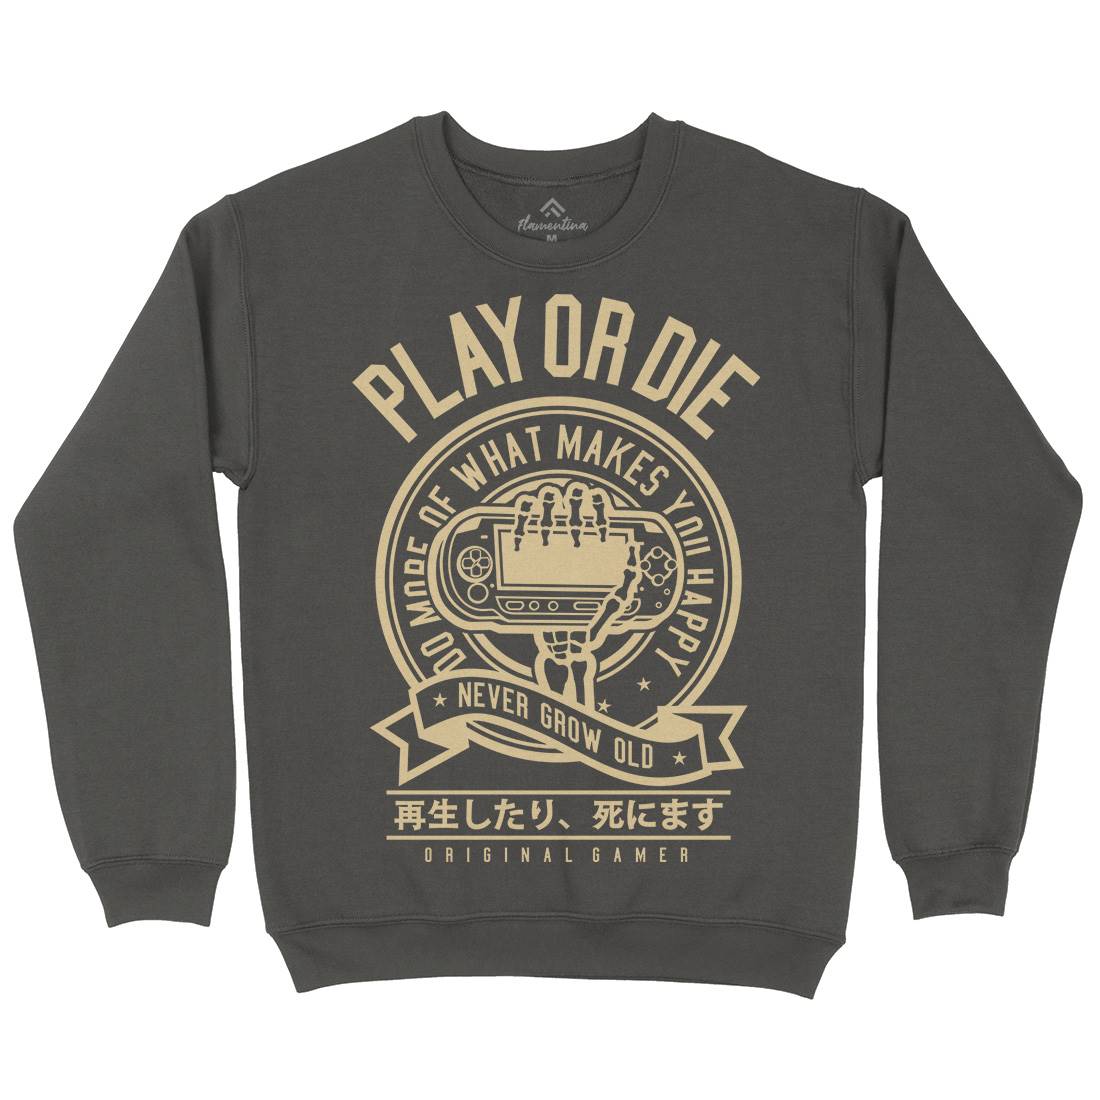 Play Or Die Mens Crew Neck Sweatshirt Geek A262